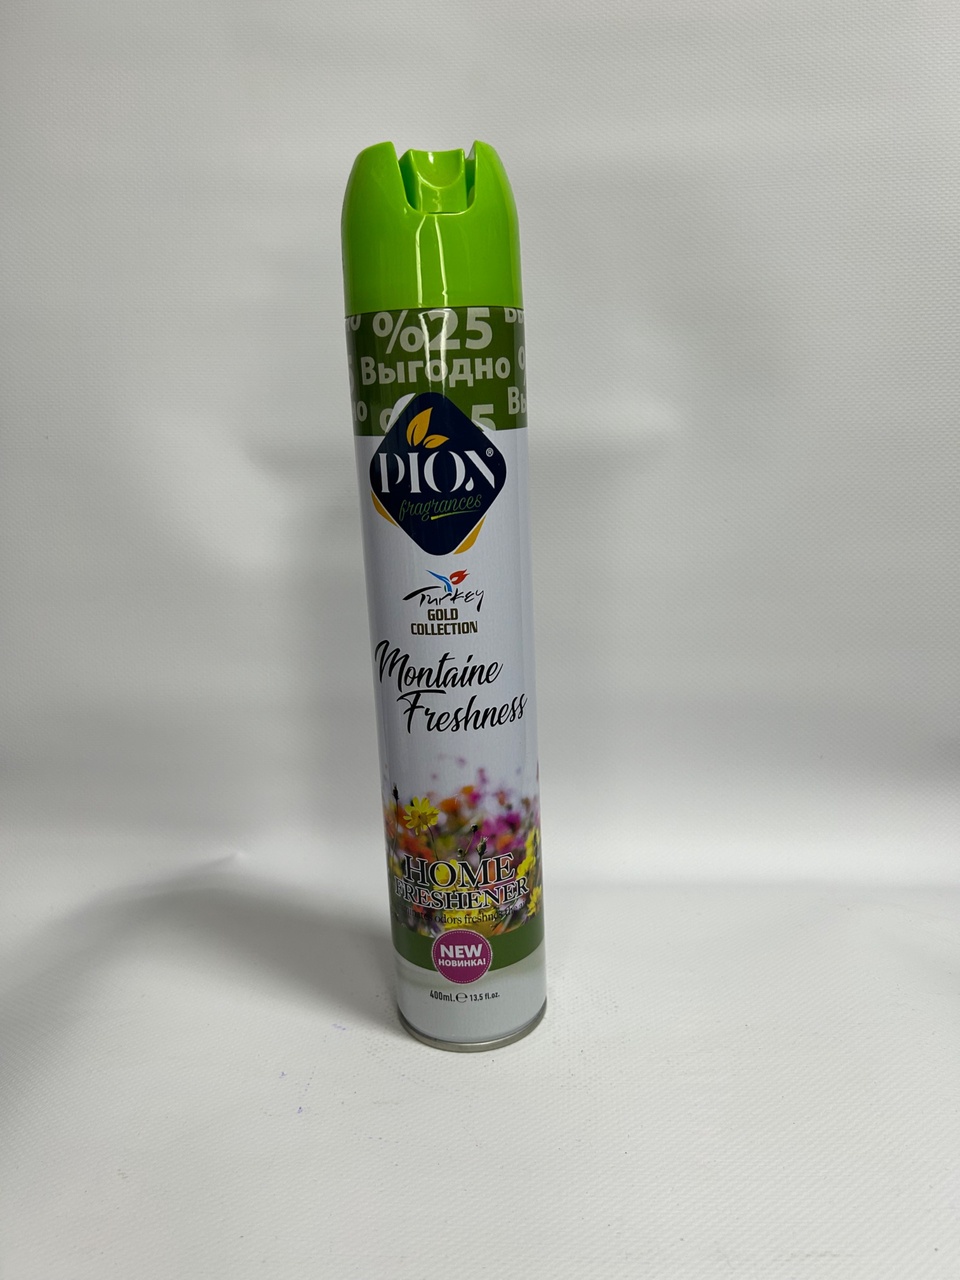 Освежитель воздуха Diox с ароматом “Свежесть полей» 400мл - 130 ₽, заказать онлайн.